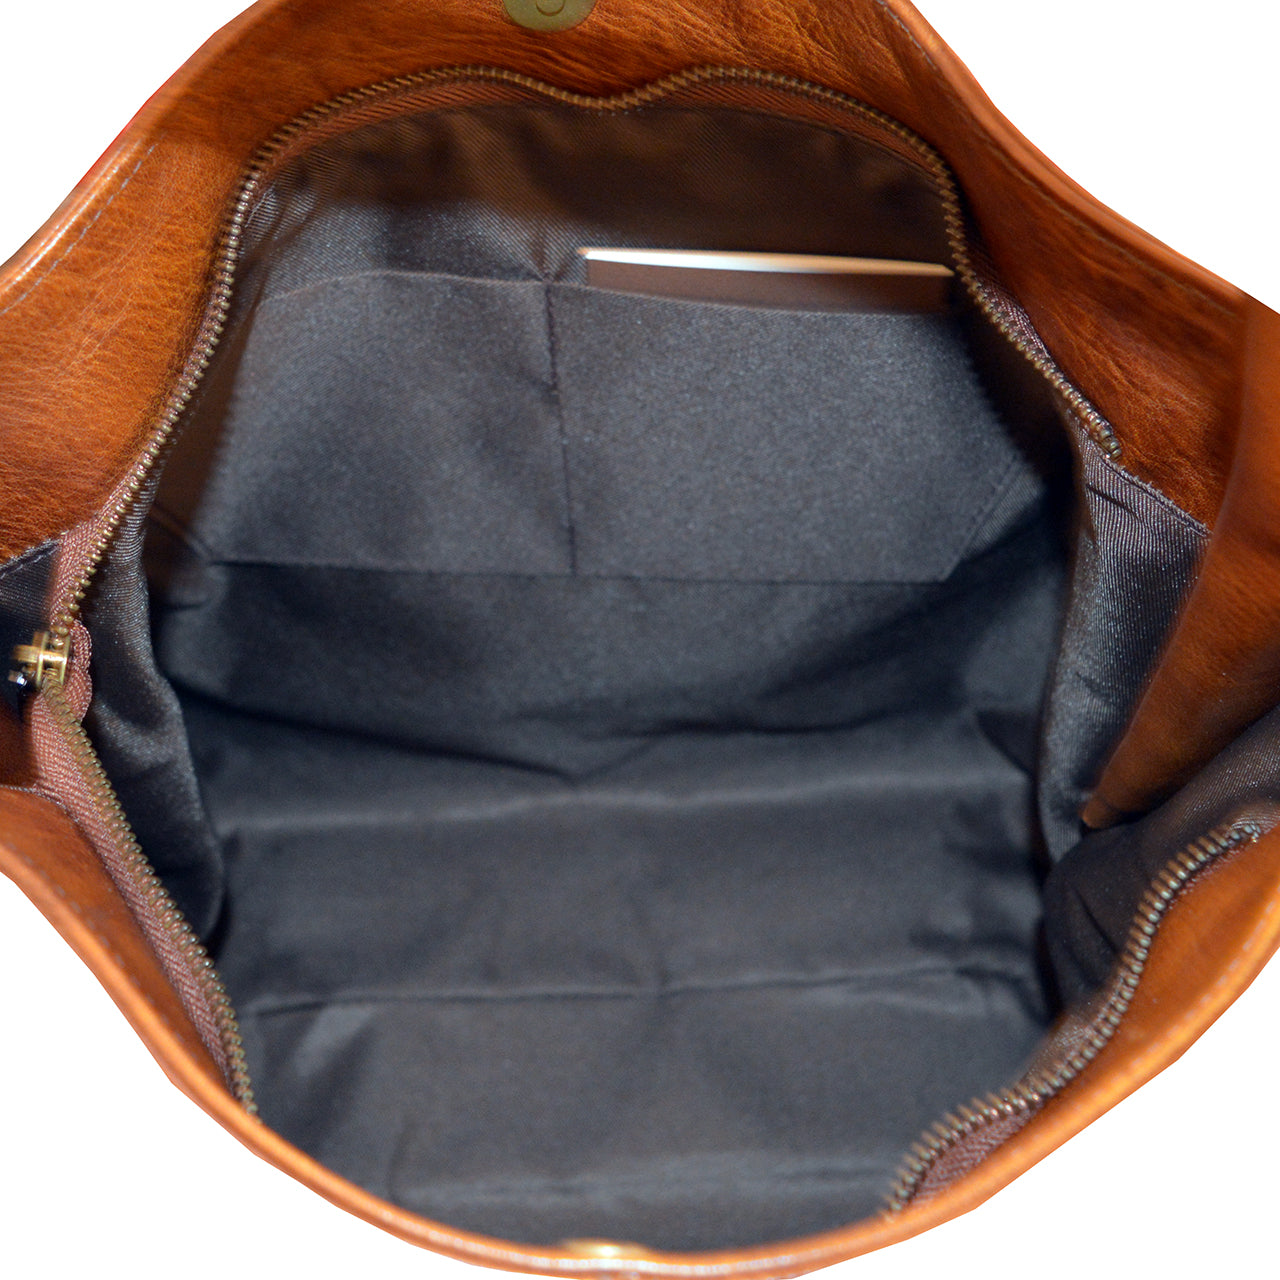 Pratesi Donnini B355 Woman Bag in genuine Italian leather